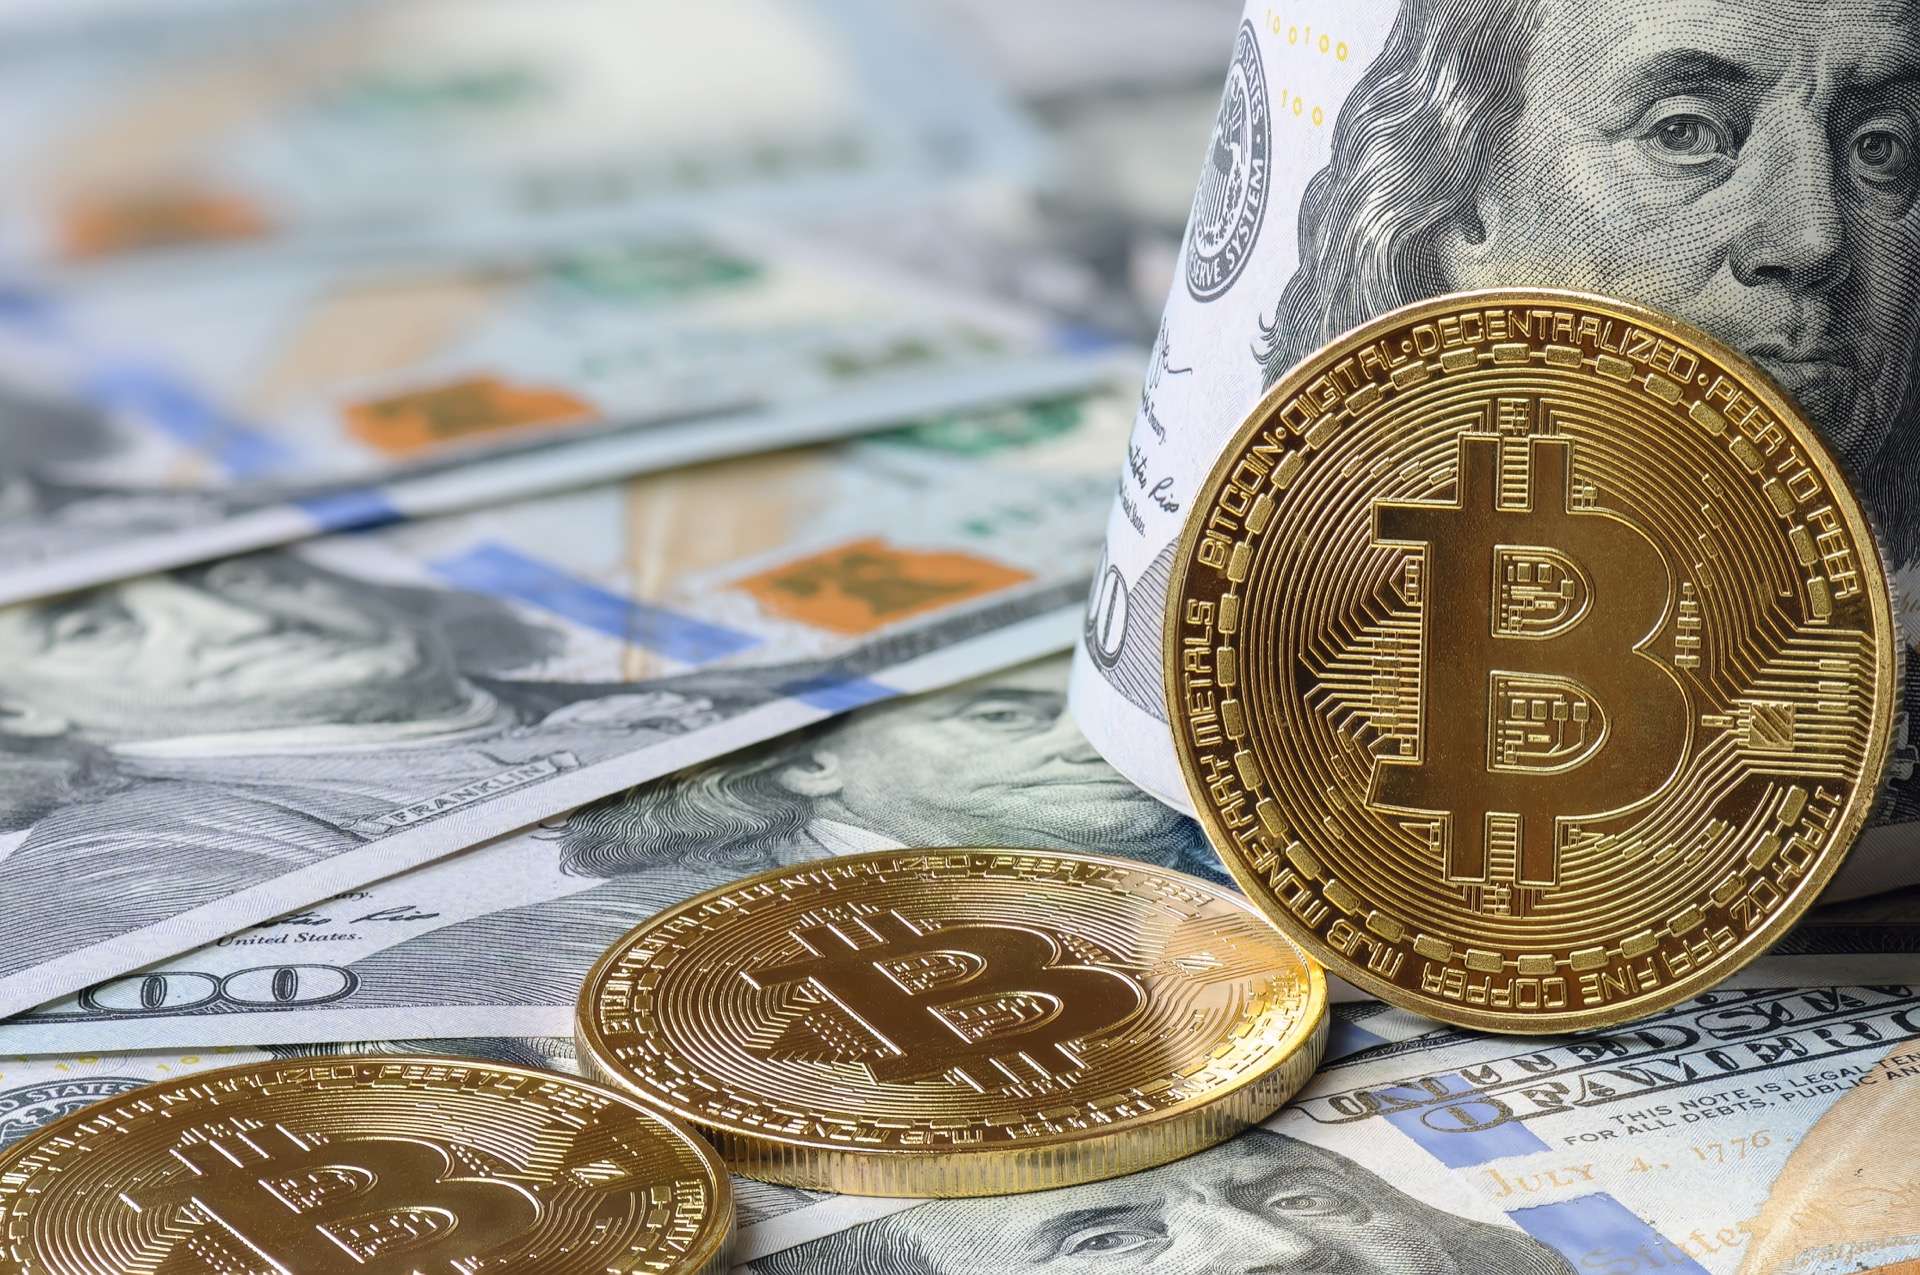 Le Bitcoin est officiellement une monnaie nationale au Salvador aujourd'hui